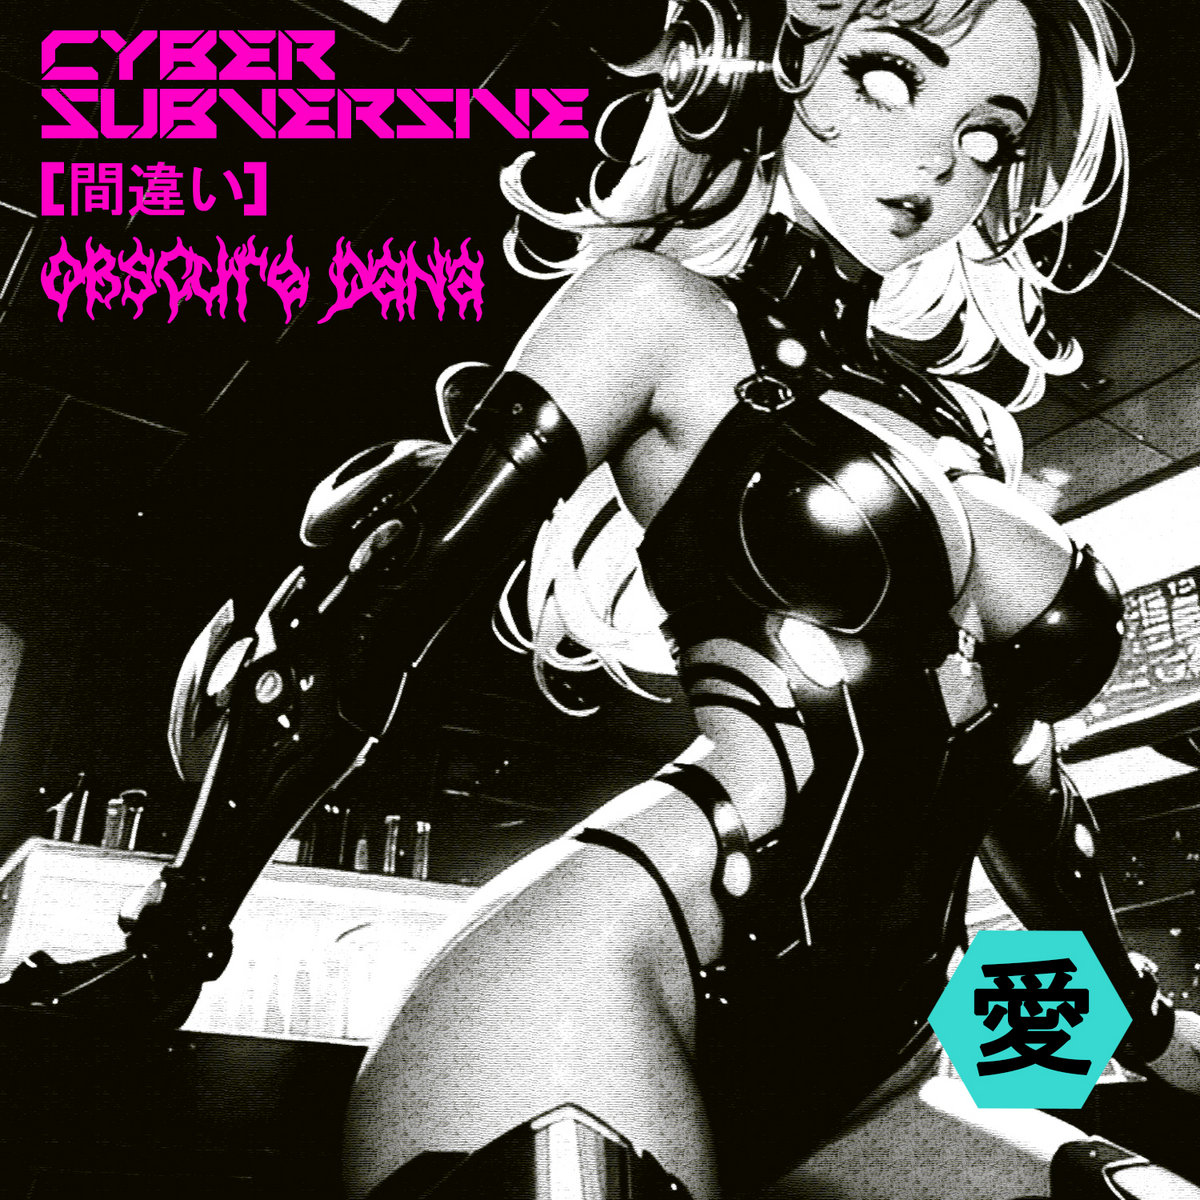 Obscure Dana – CyberSubversive​​​[​​​間​​​違​​​い​​​]